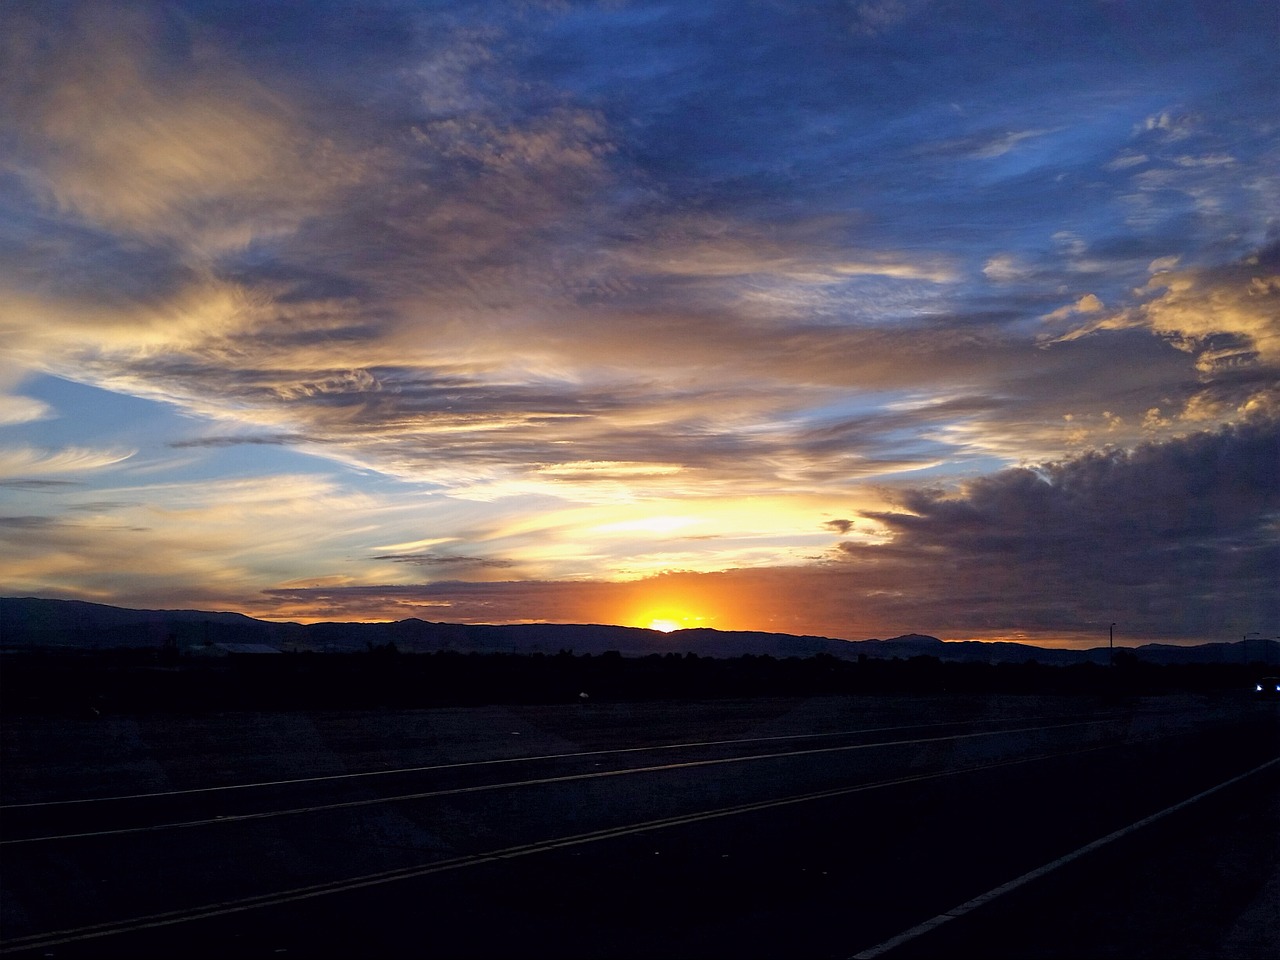 antelope valley sunsets amazing sunsets god's amazing handiwork free photo